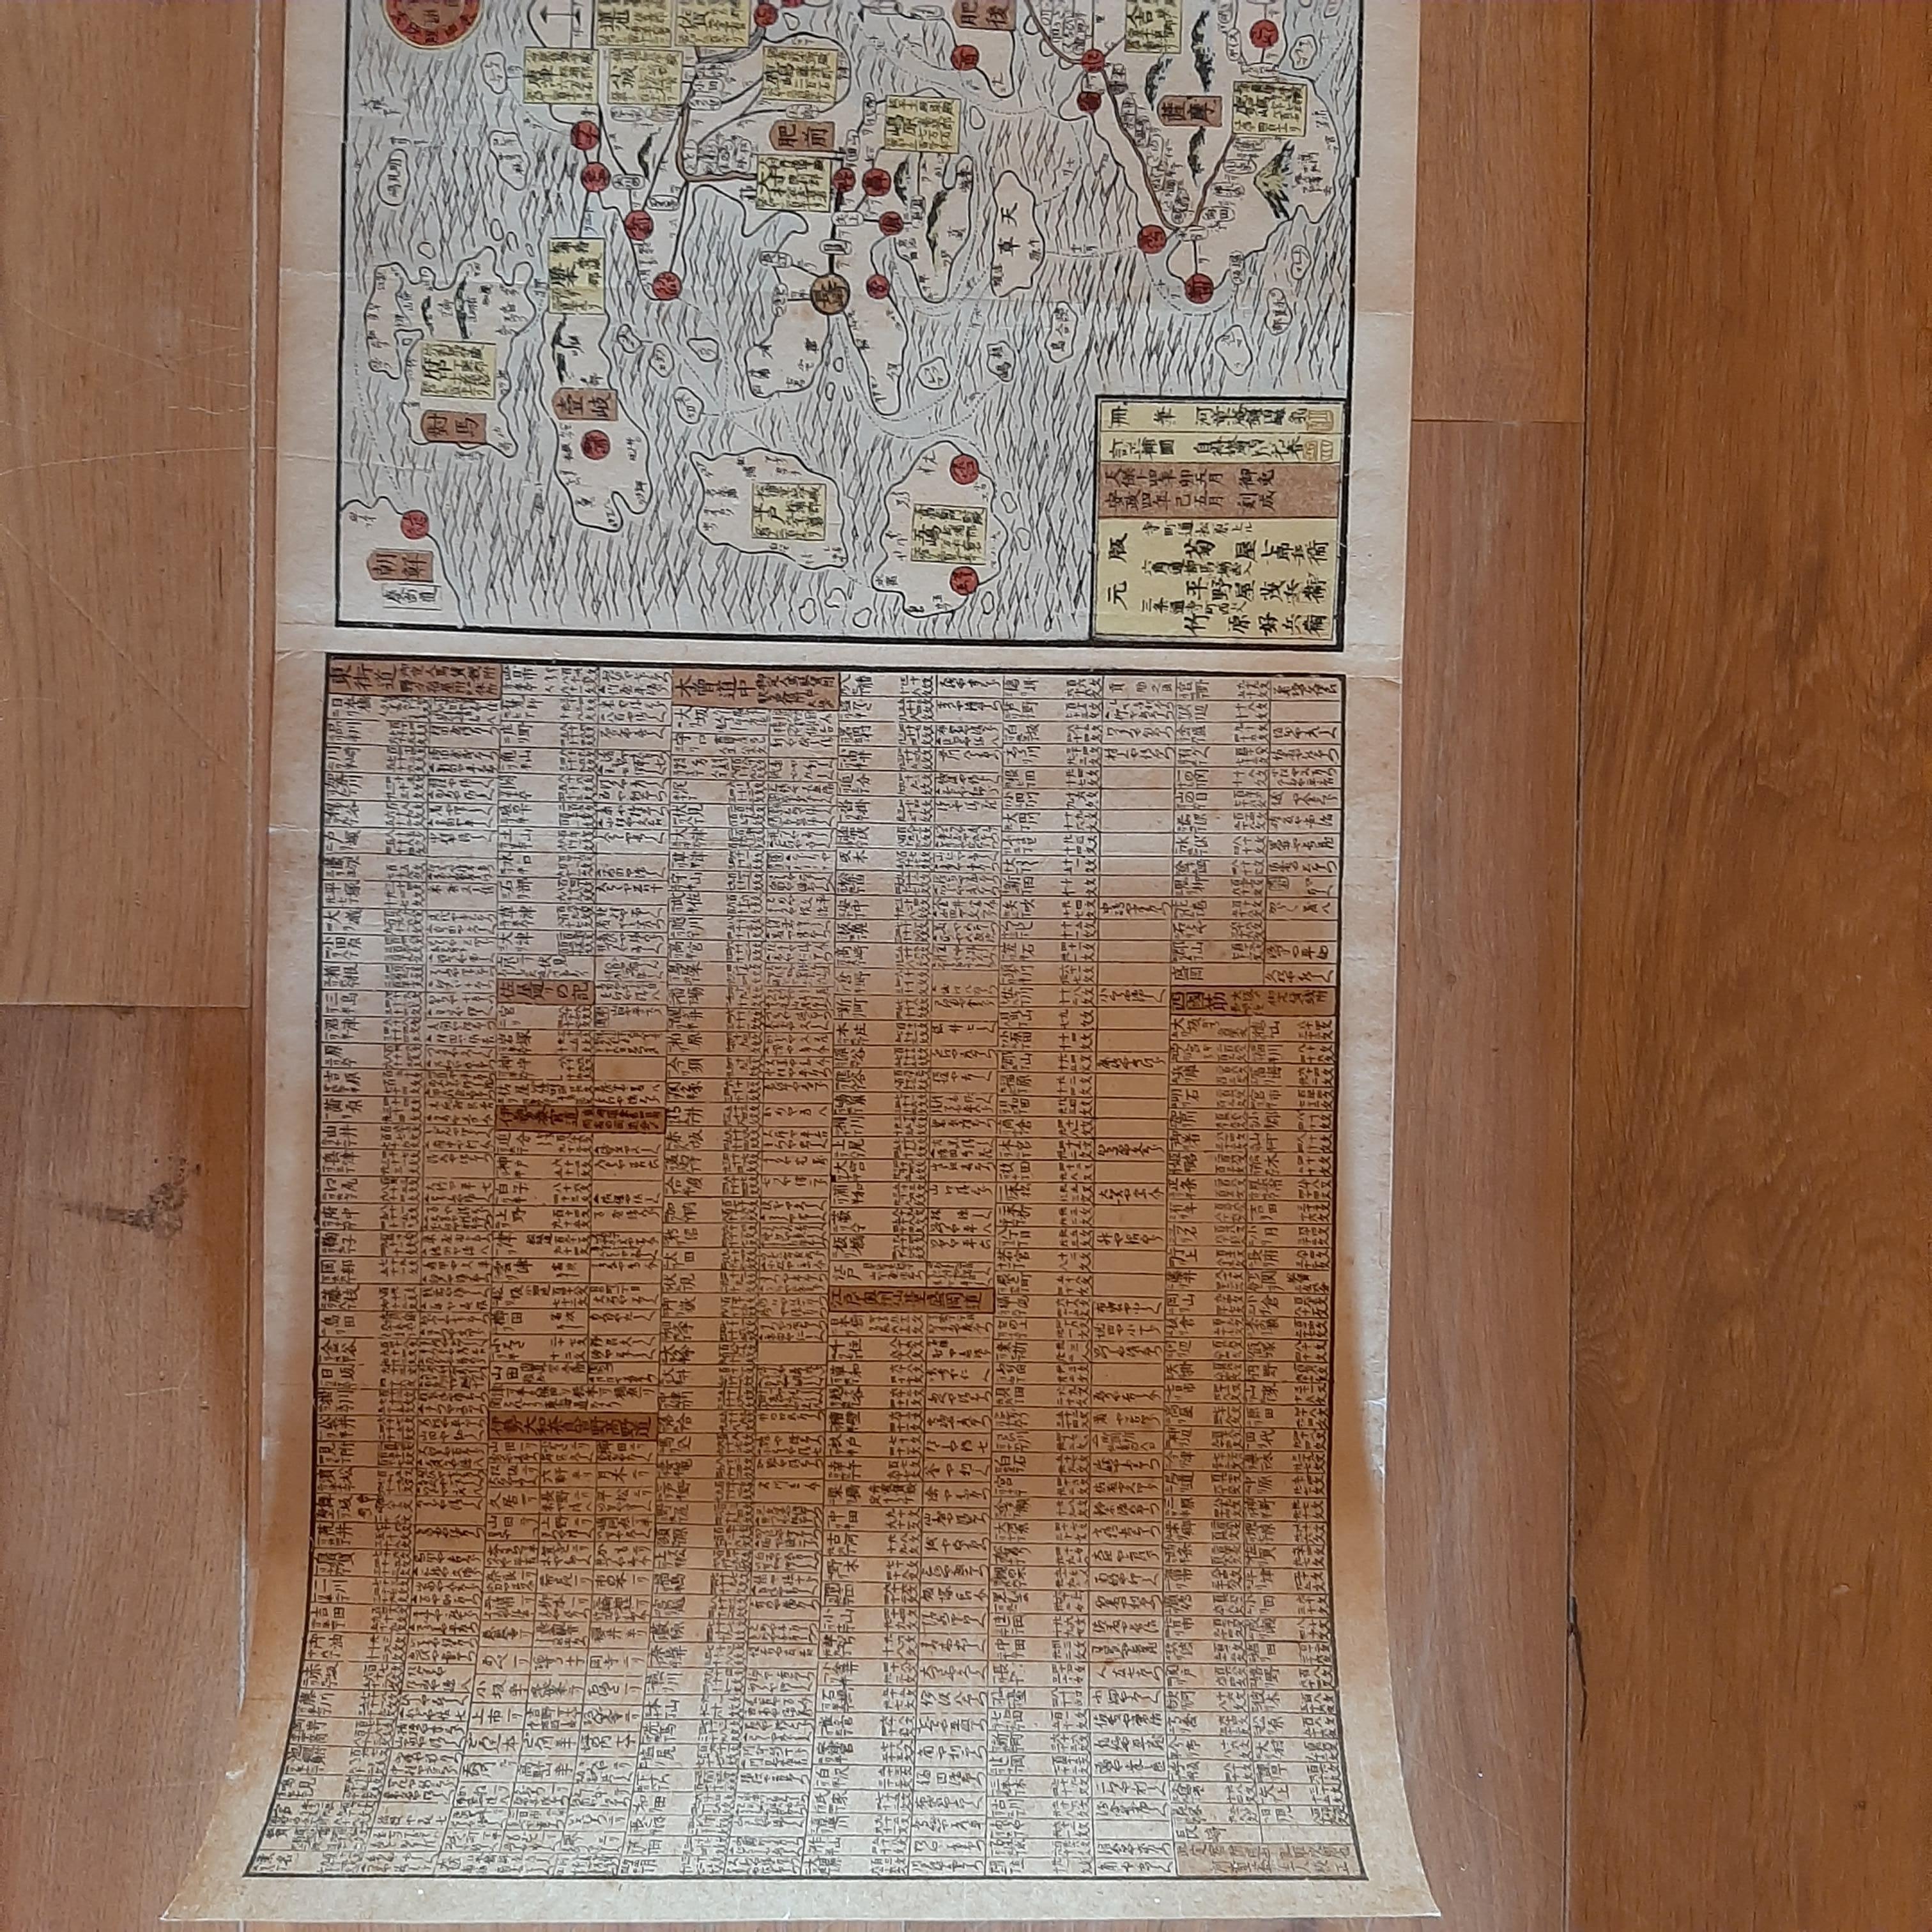 Original japanische Holzschnittkarte von Japan. Sehr große und faszinierende Karte, die mit Japanpapier neu aufgelegt wurde. Veröffentlicht um 1860.